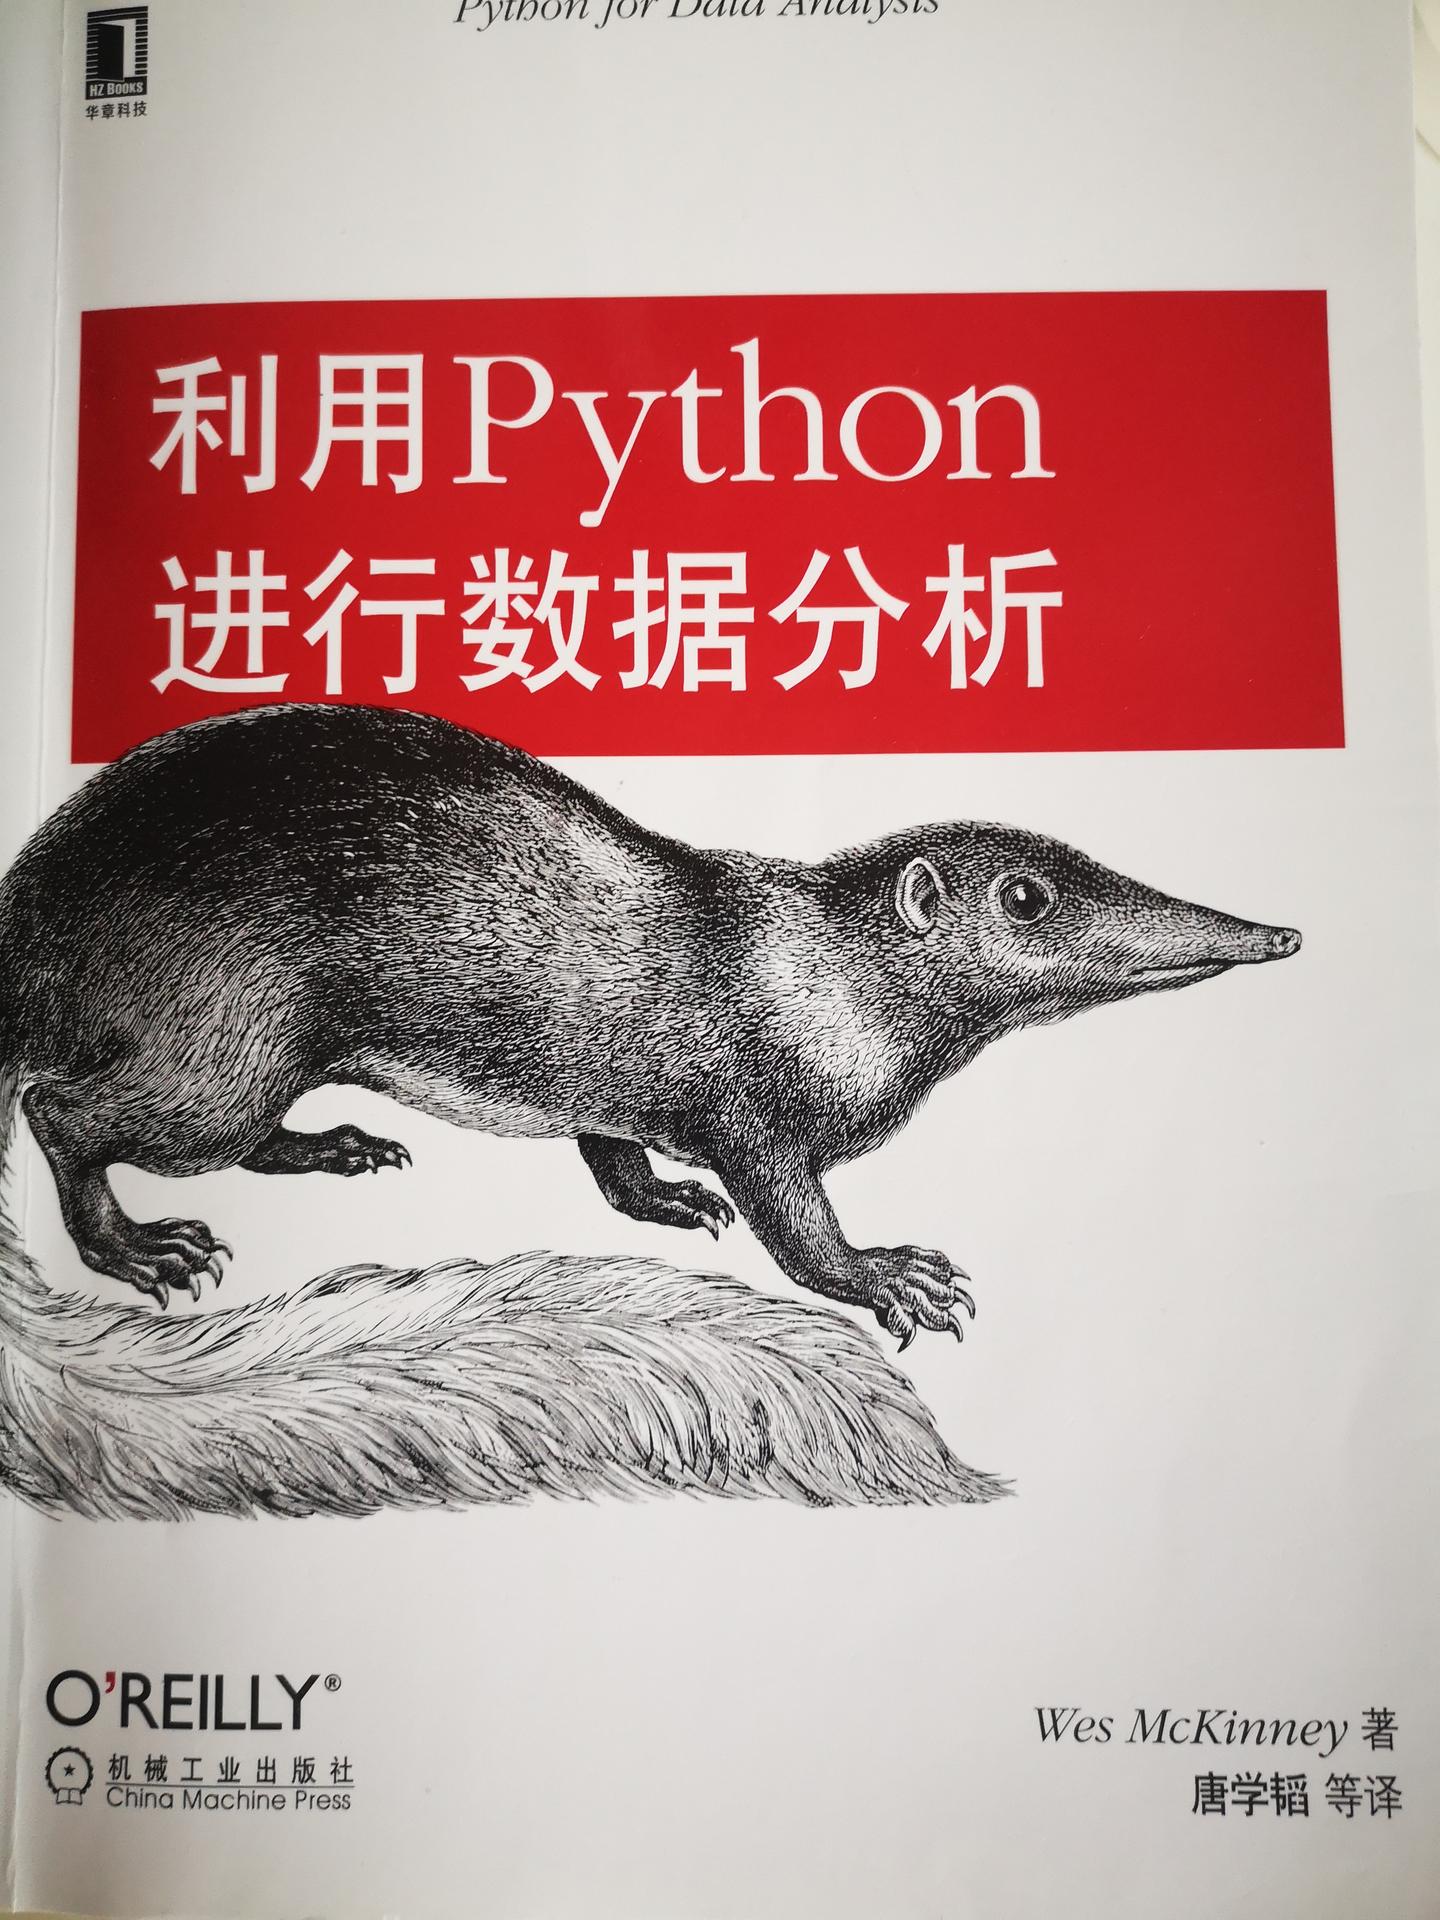 利用python进行数据分析(中文第一版)